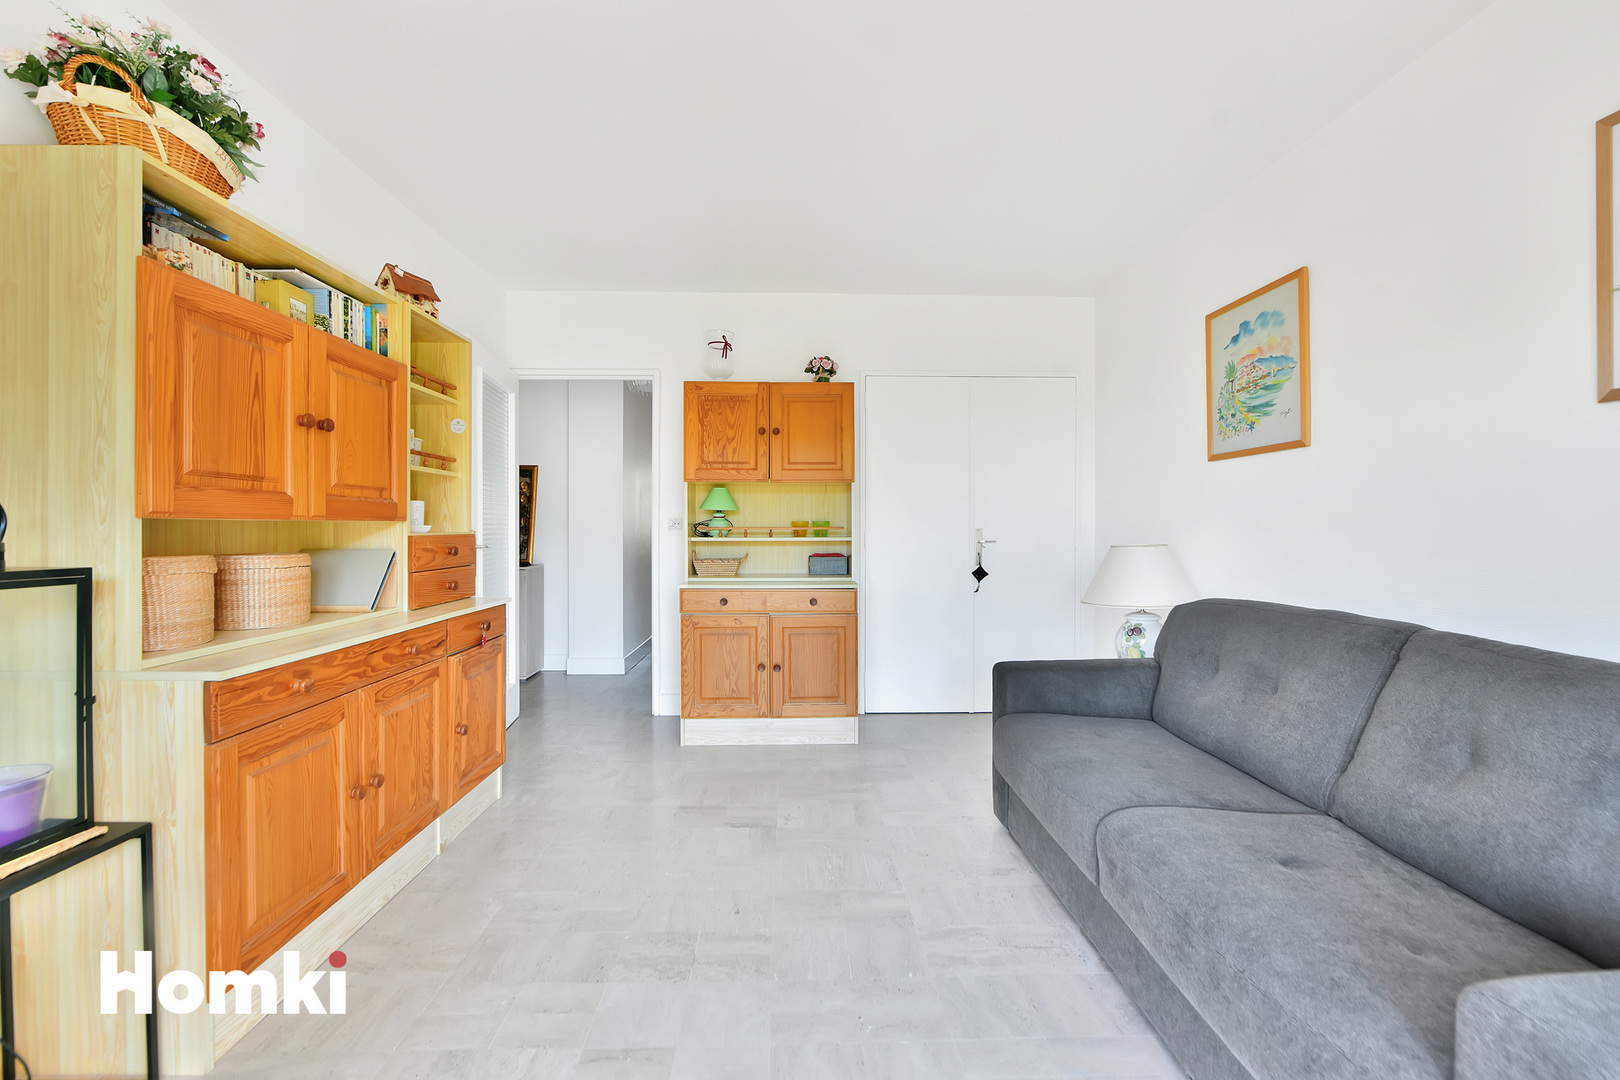 Homki - Vente Appartement  de 45.0 m² à Cannes 06400